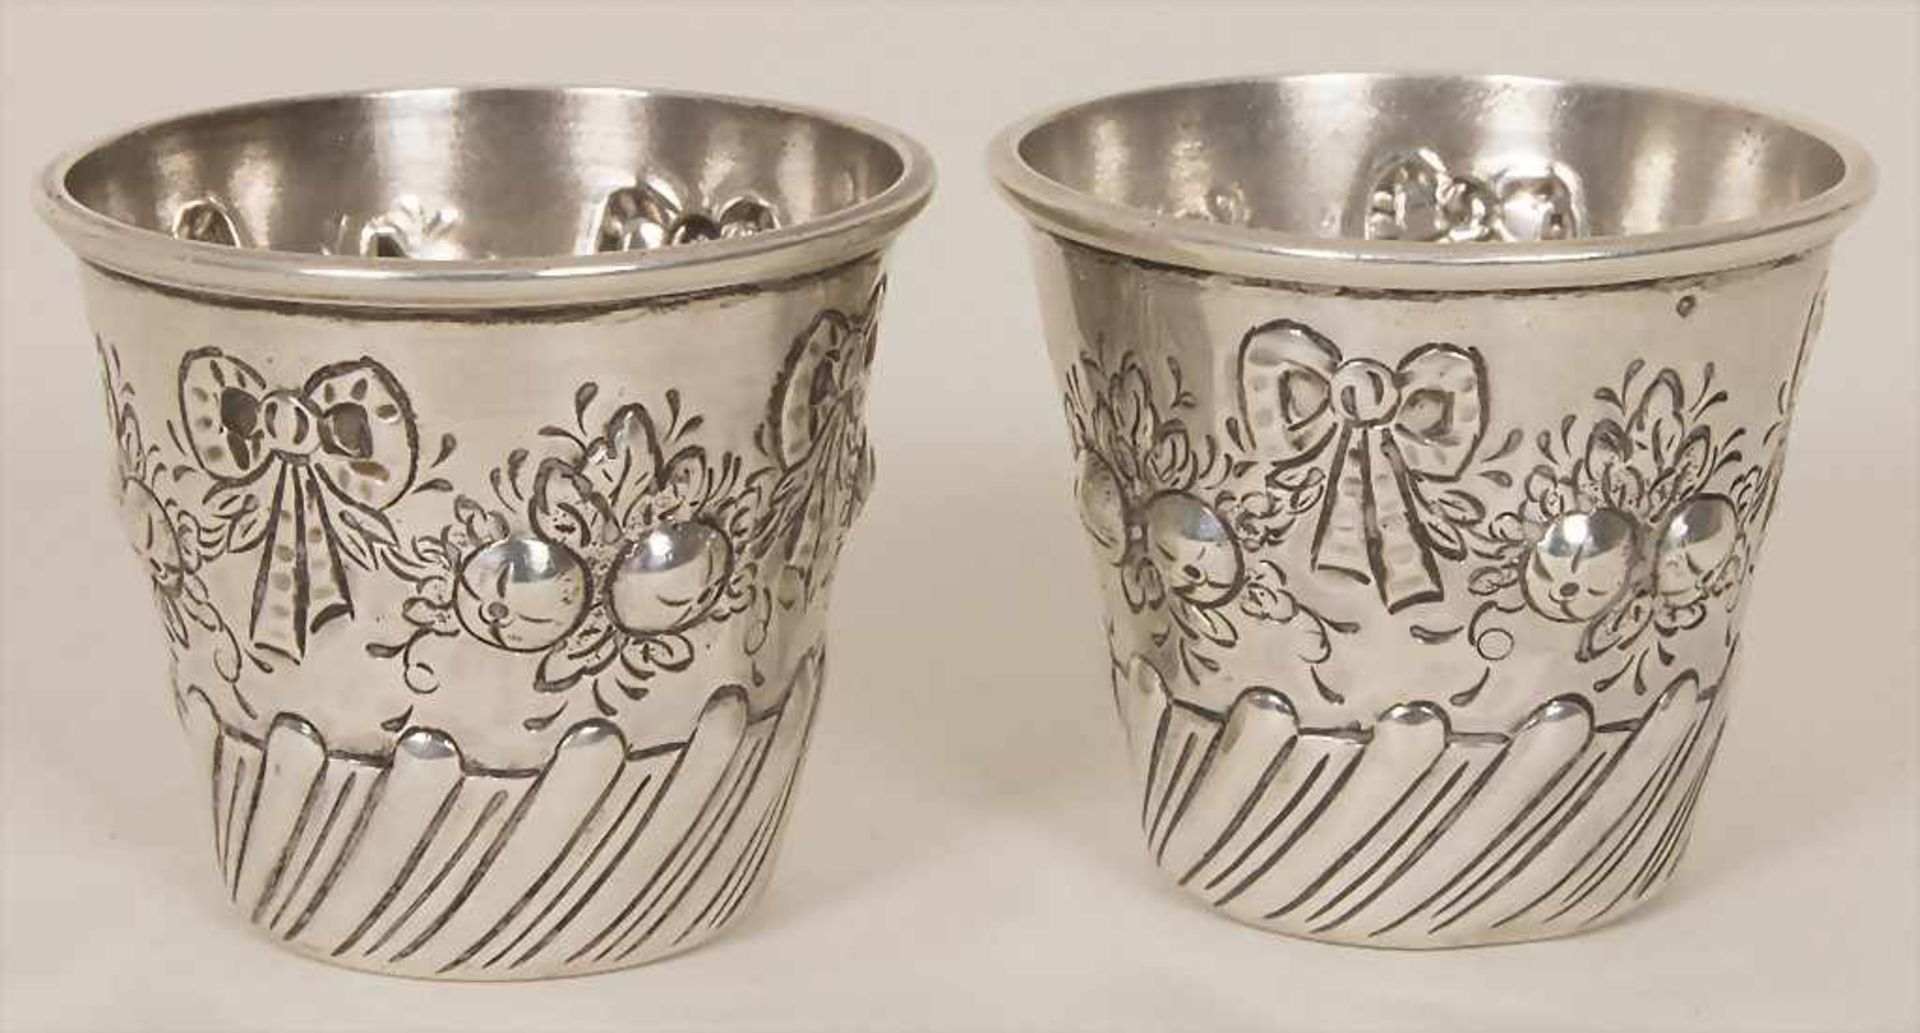 Zwei kleine Becher / Two small silver beakers, Hanau, um 1880Material: Silber, 800,Punzierung: